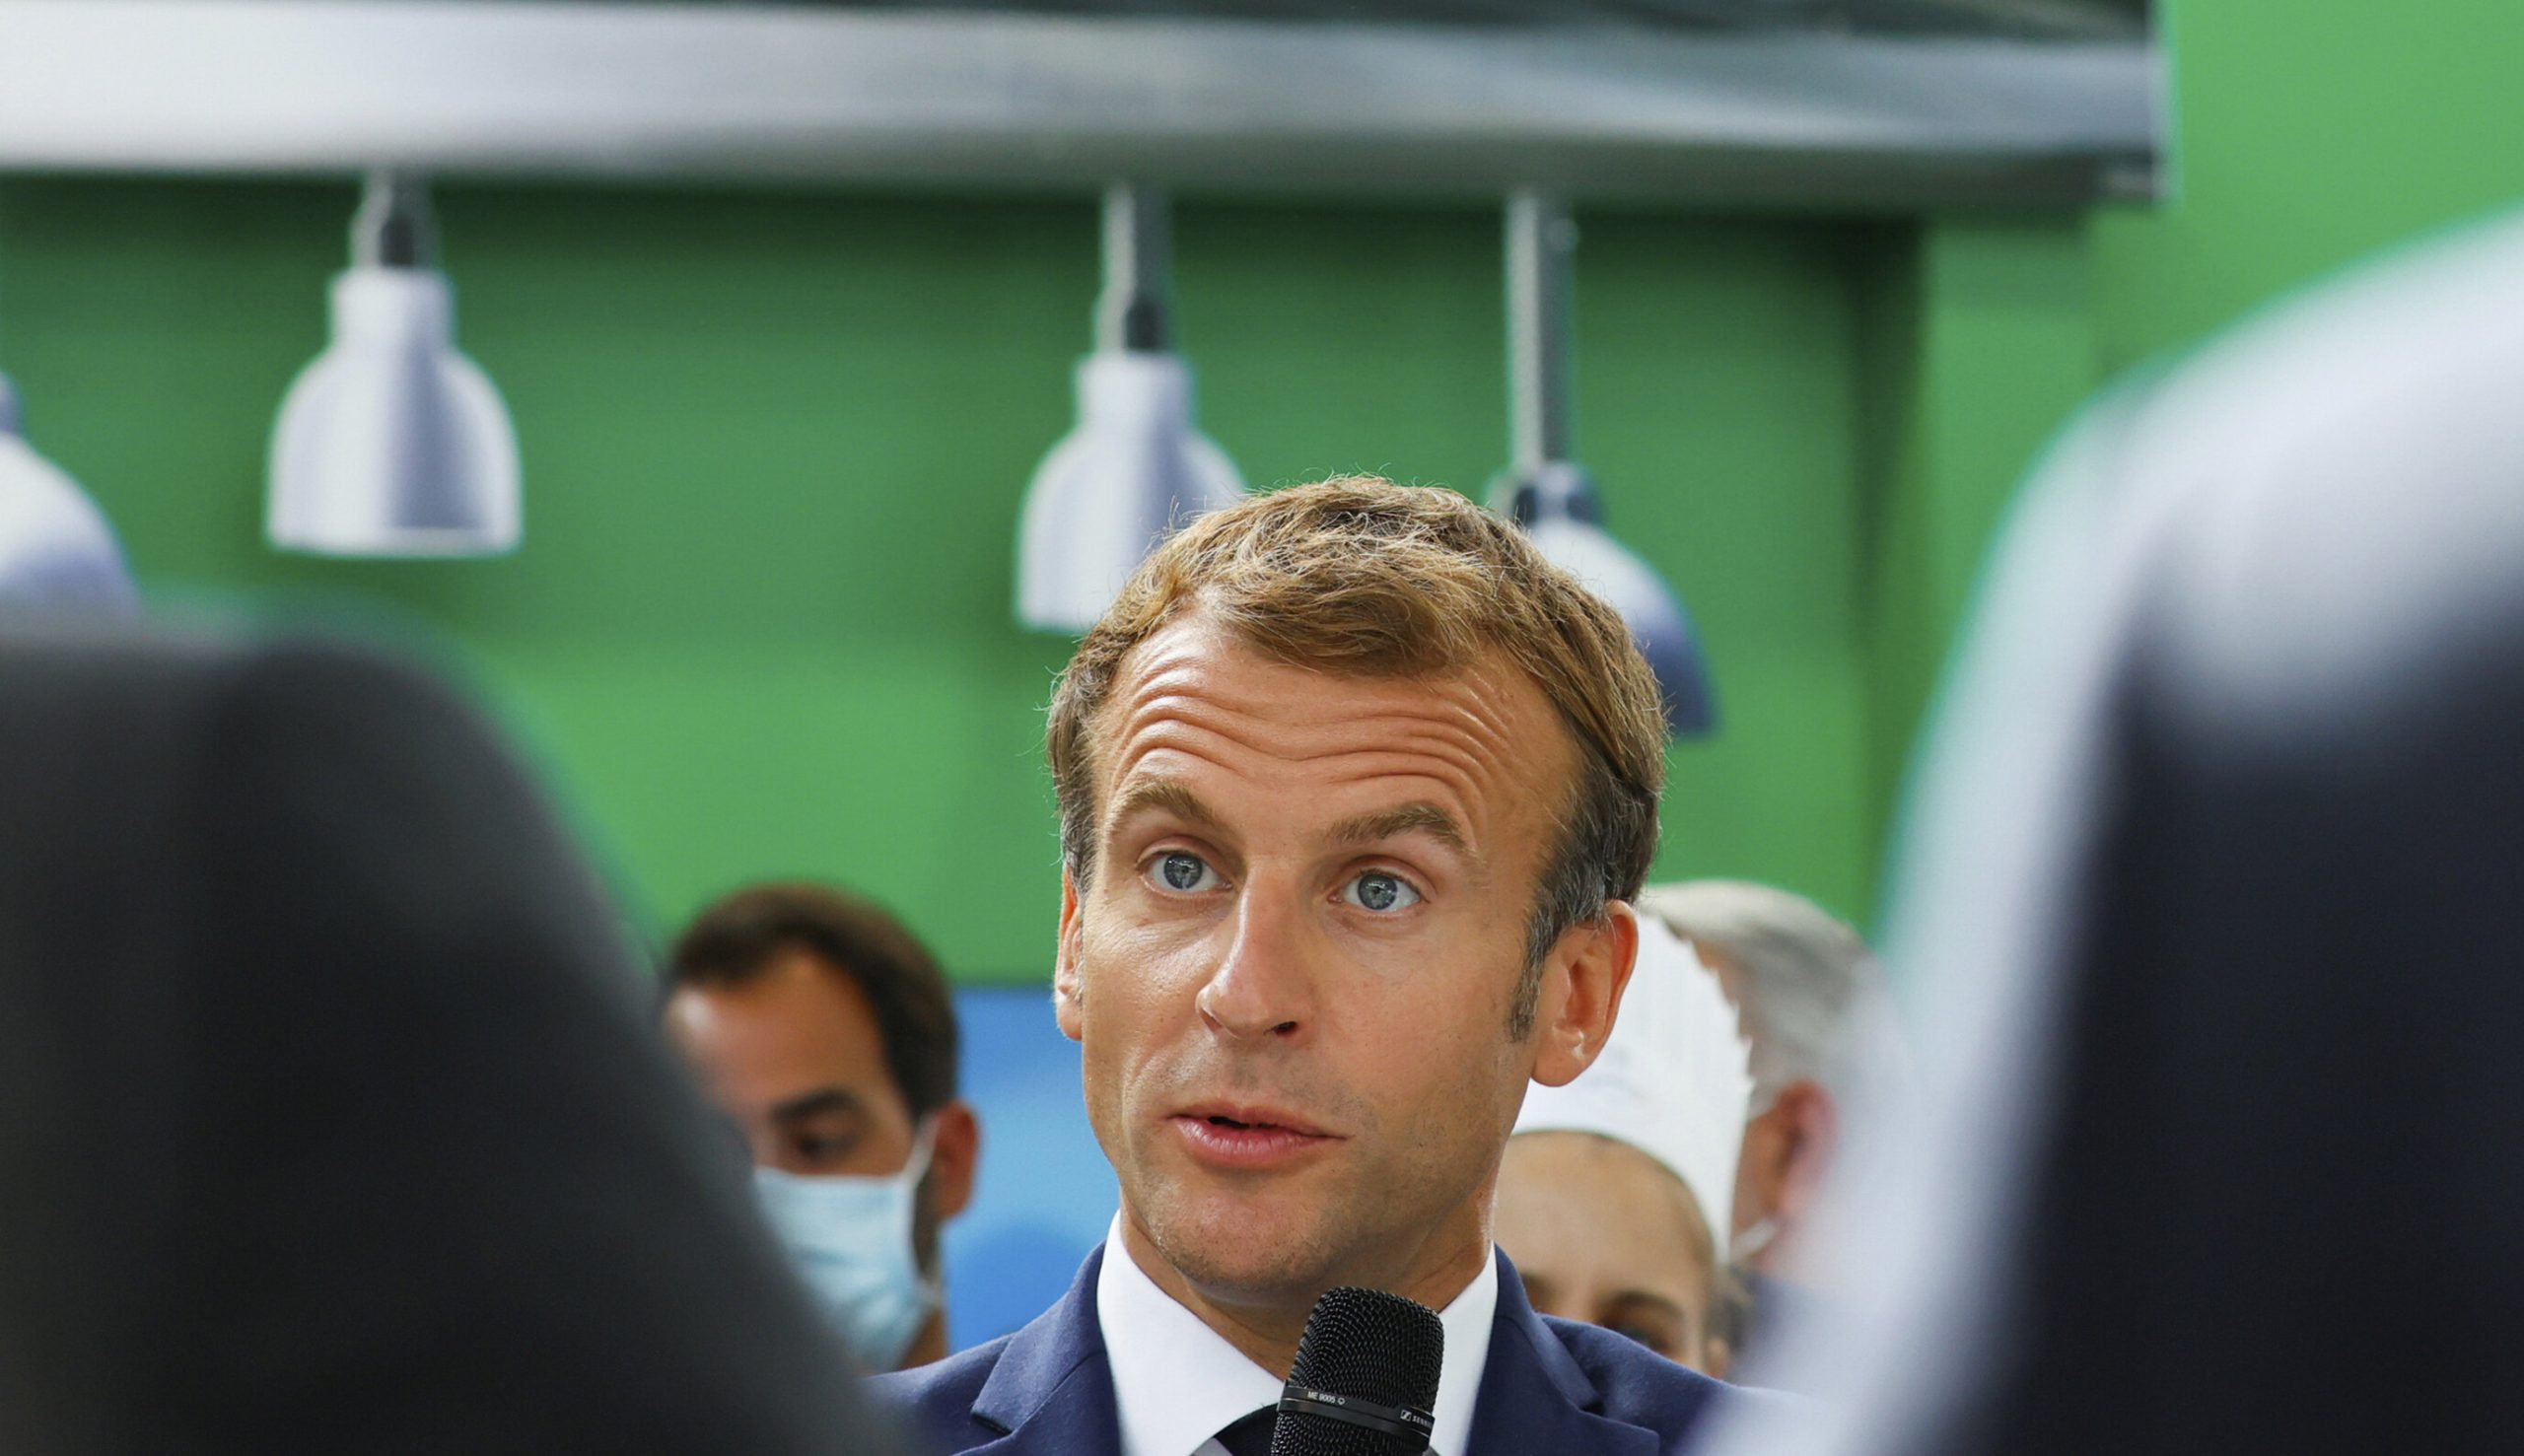 Studentul care a aruncat cu un ou în Emmanuel Macron a fost internat la psihiatrie. „Nu are discernământ”